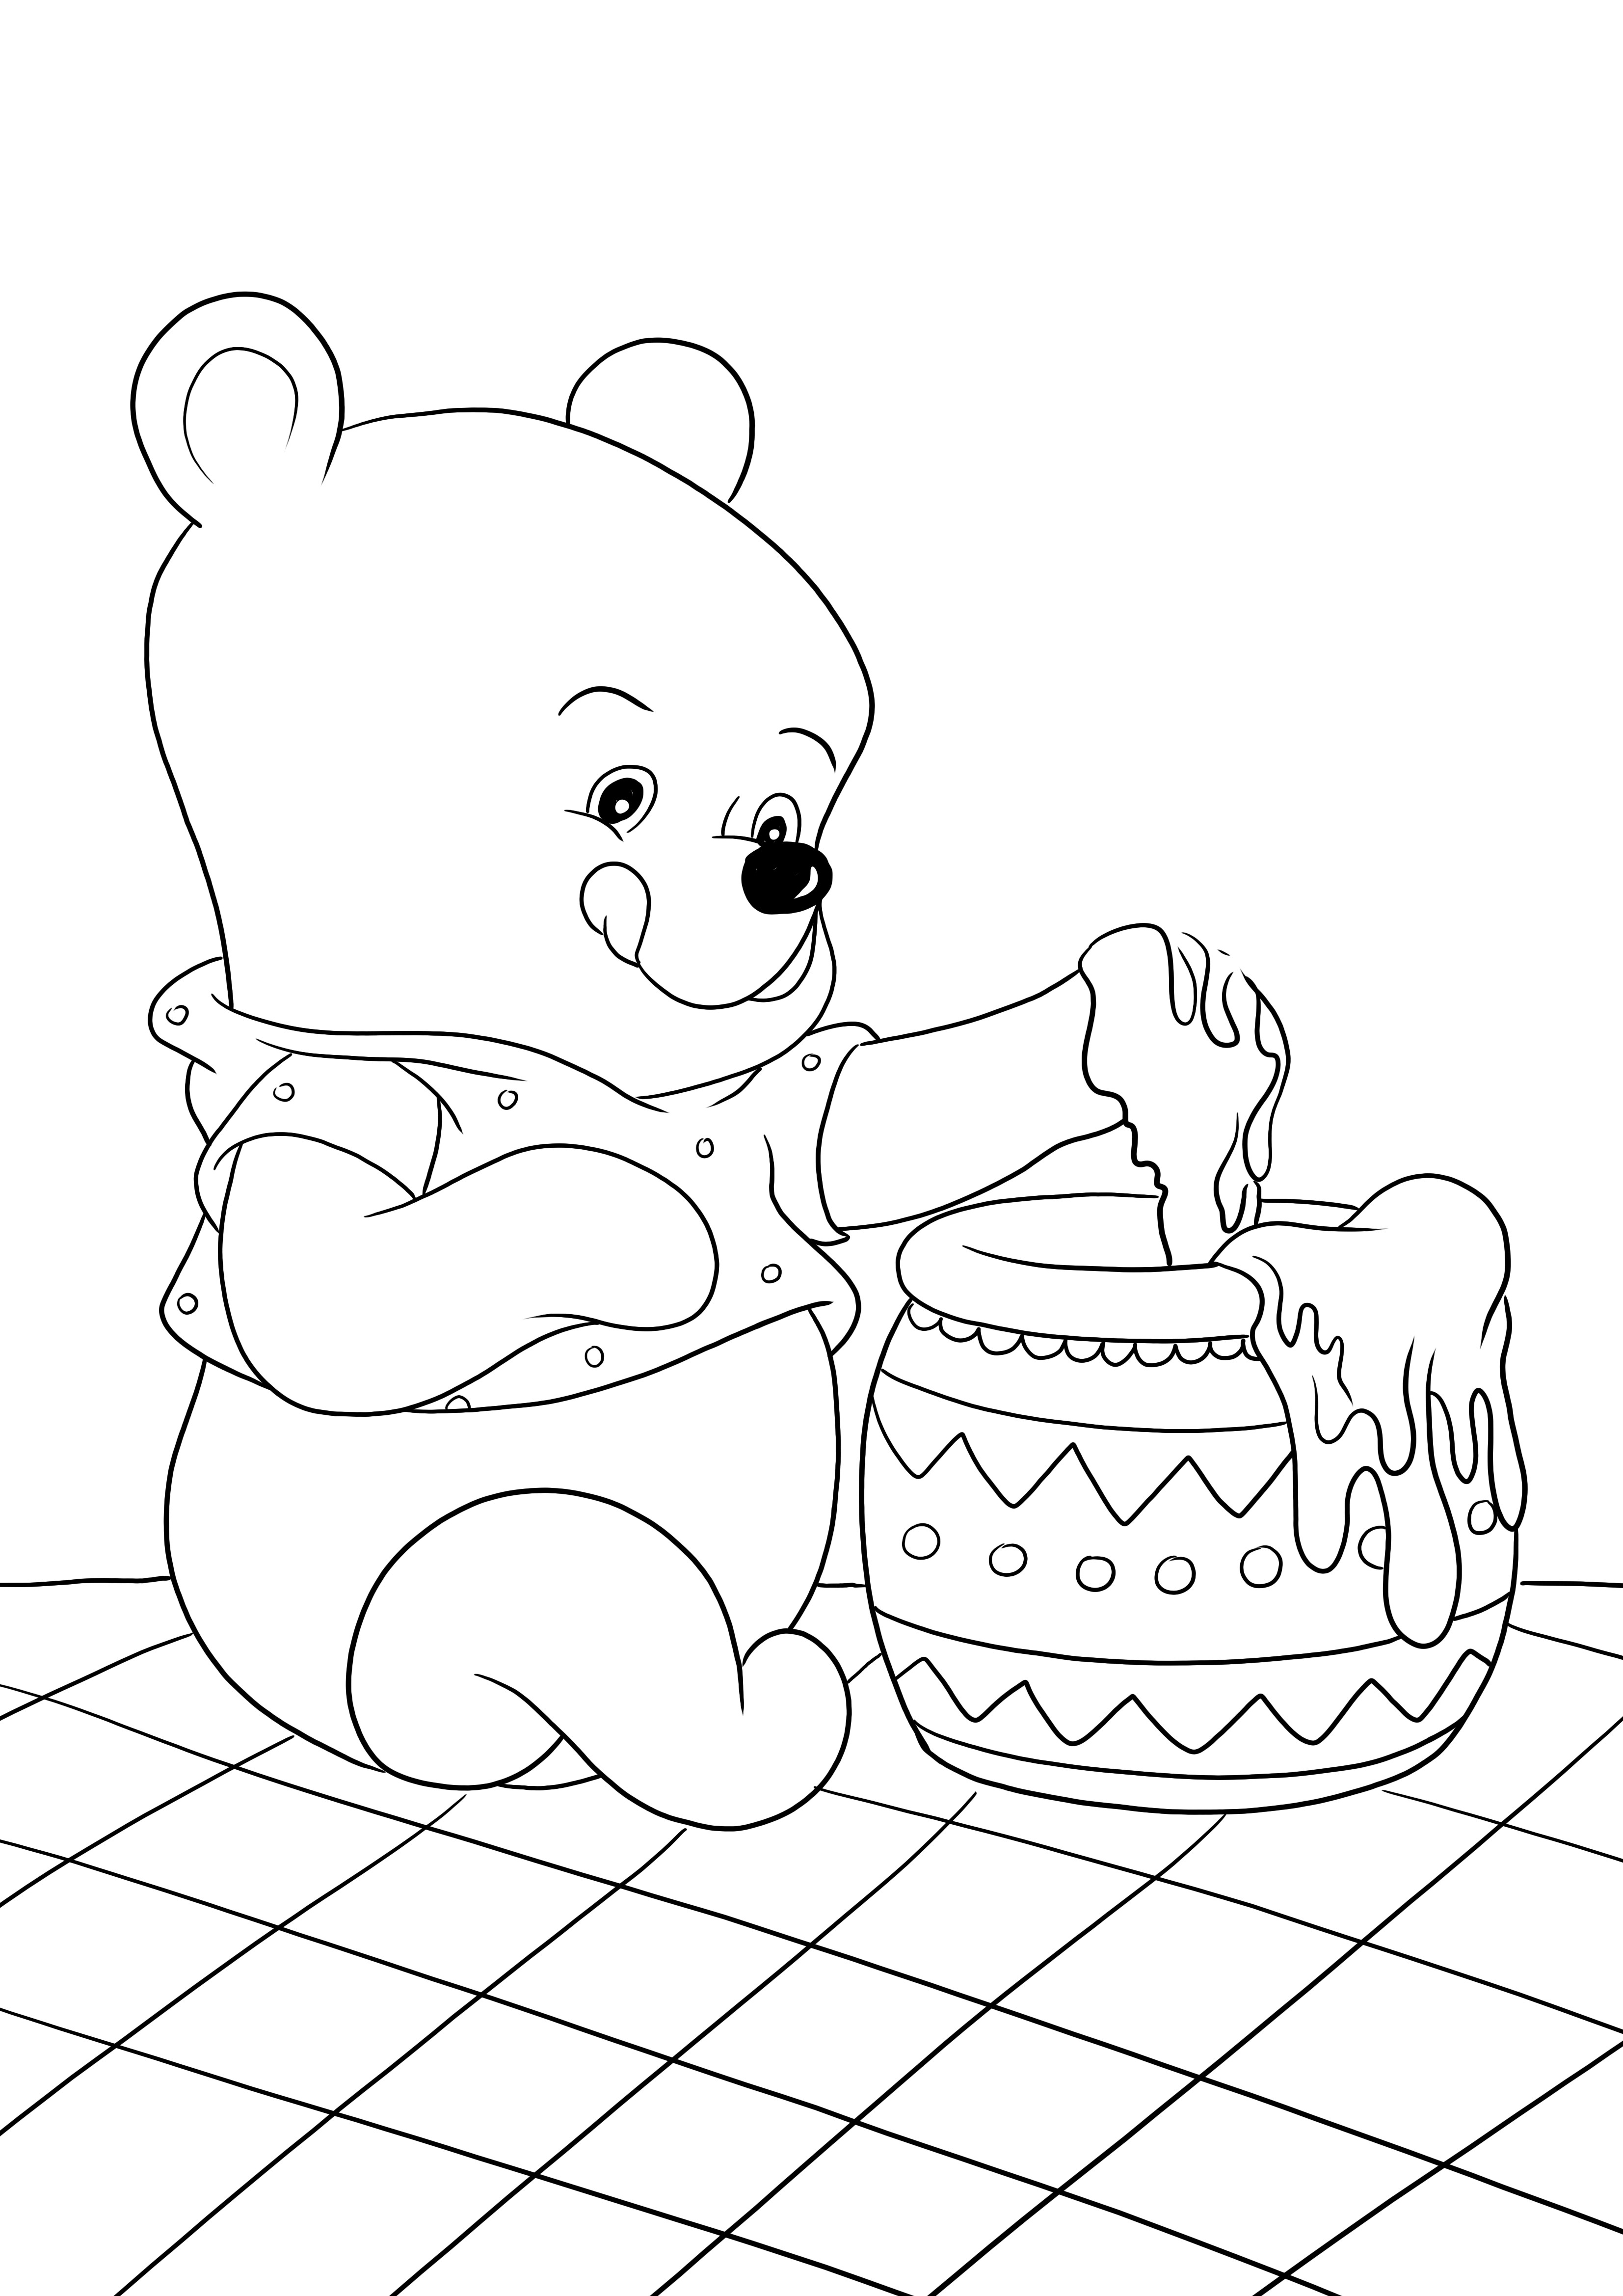 Winnie eet honing uit een potje om een kleurenfoto te maken om af te drukken of te bewaren voor later kleurplaat